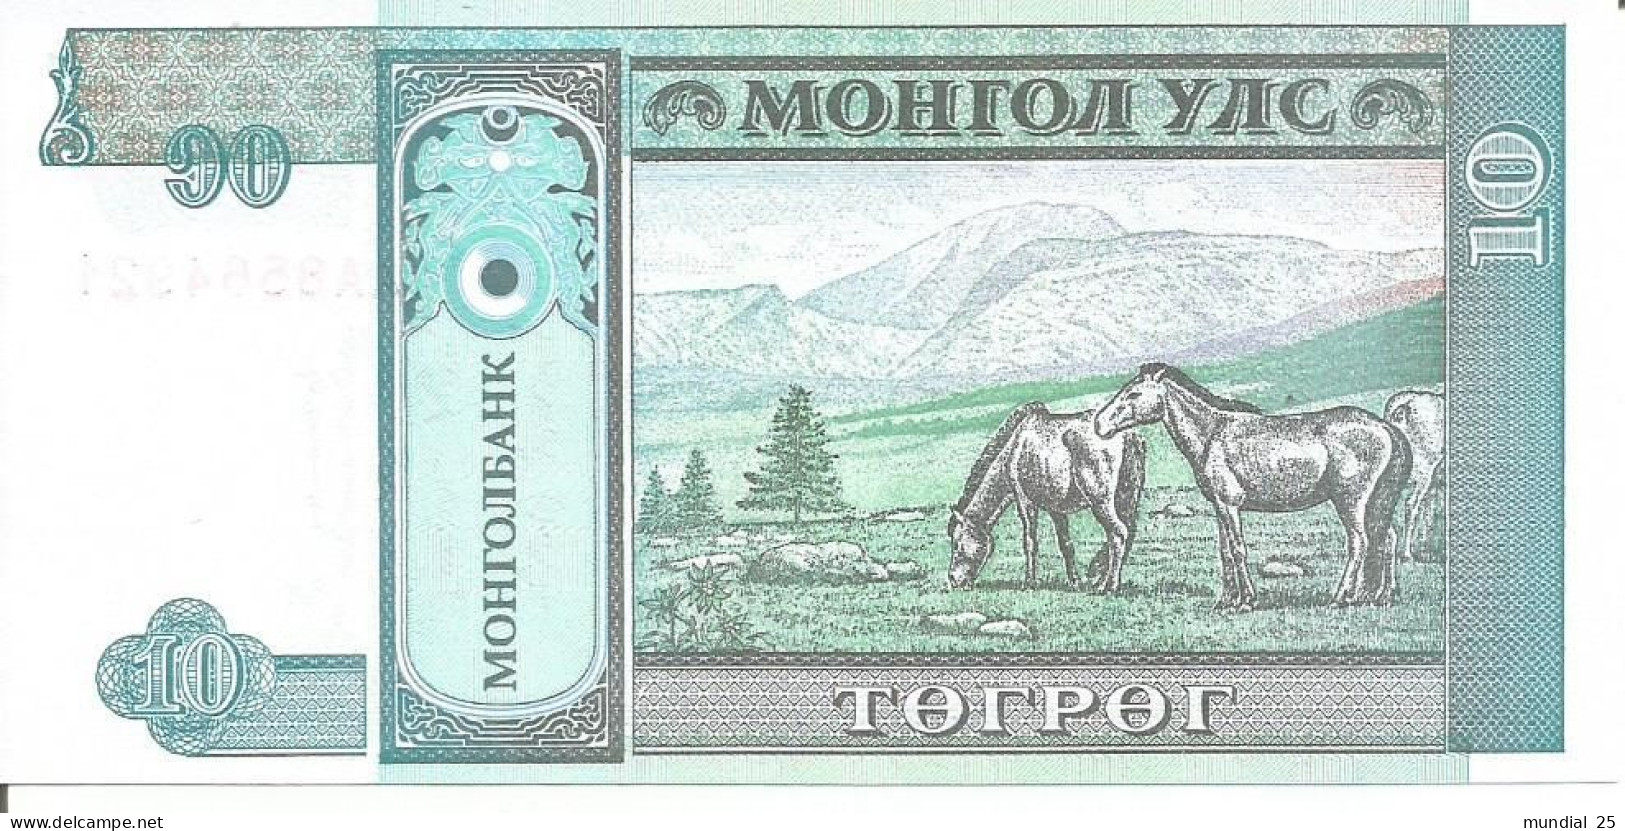 MONGOLIA 10 TUGRIK N/D (1993) - Mongolia